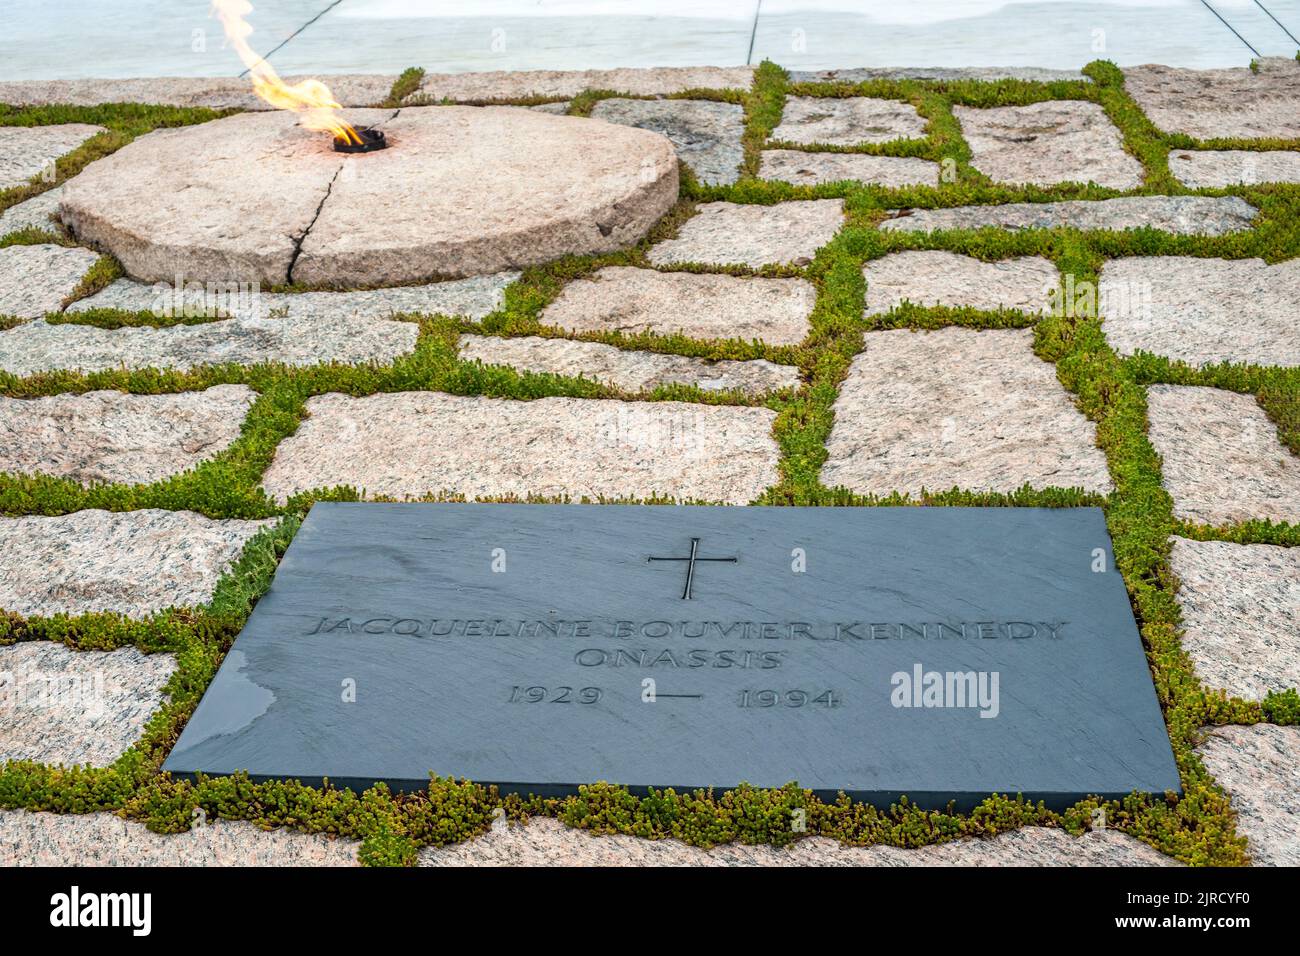 La tombe de Jacqueline Bouvier Kennedy Onassis dans le cimetière national d'Arlington, en face de Washington, en face du Potomac Banque D'Images